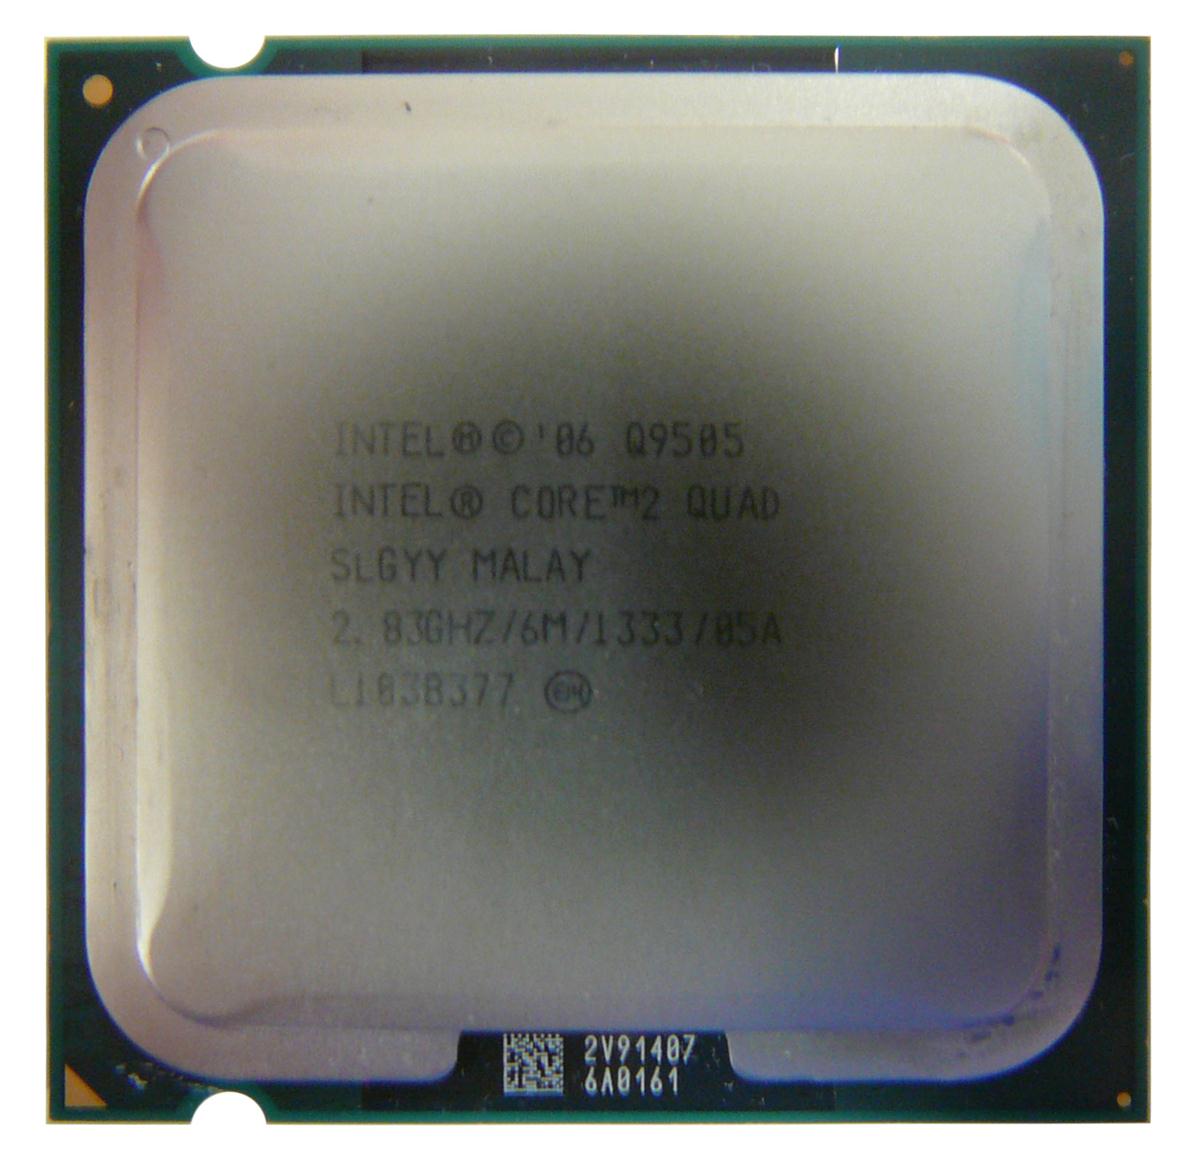 SLGYY | Intel Core 2 Quad Q9505 2.83GHz 1333MHz FSB 6MB L2 Cache Socket LGA775 Desktop Processor